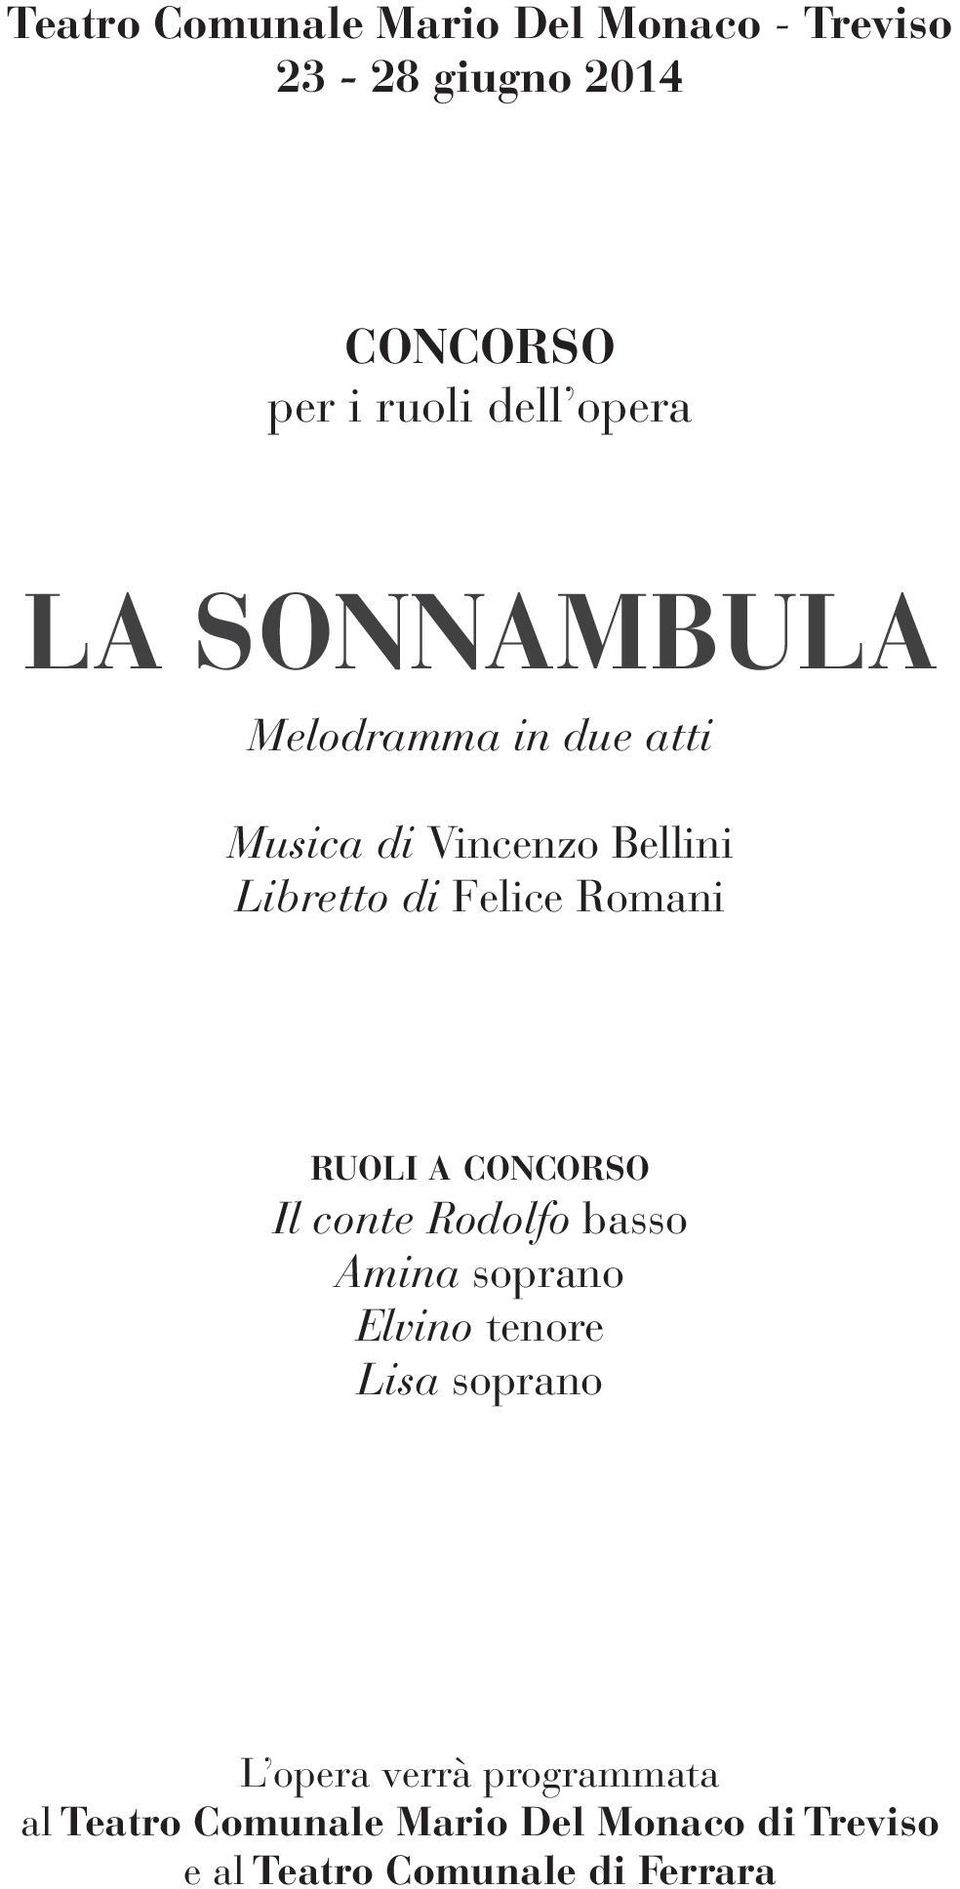 Romani ruoli a concorso Il conte Rodolfo basso Amina soprano Elvino tenore Lisa soprano L